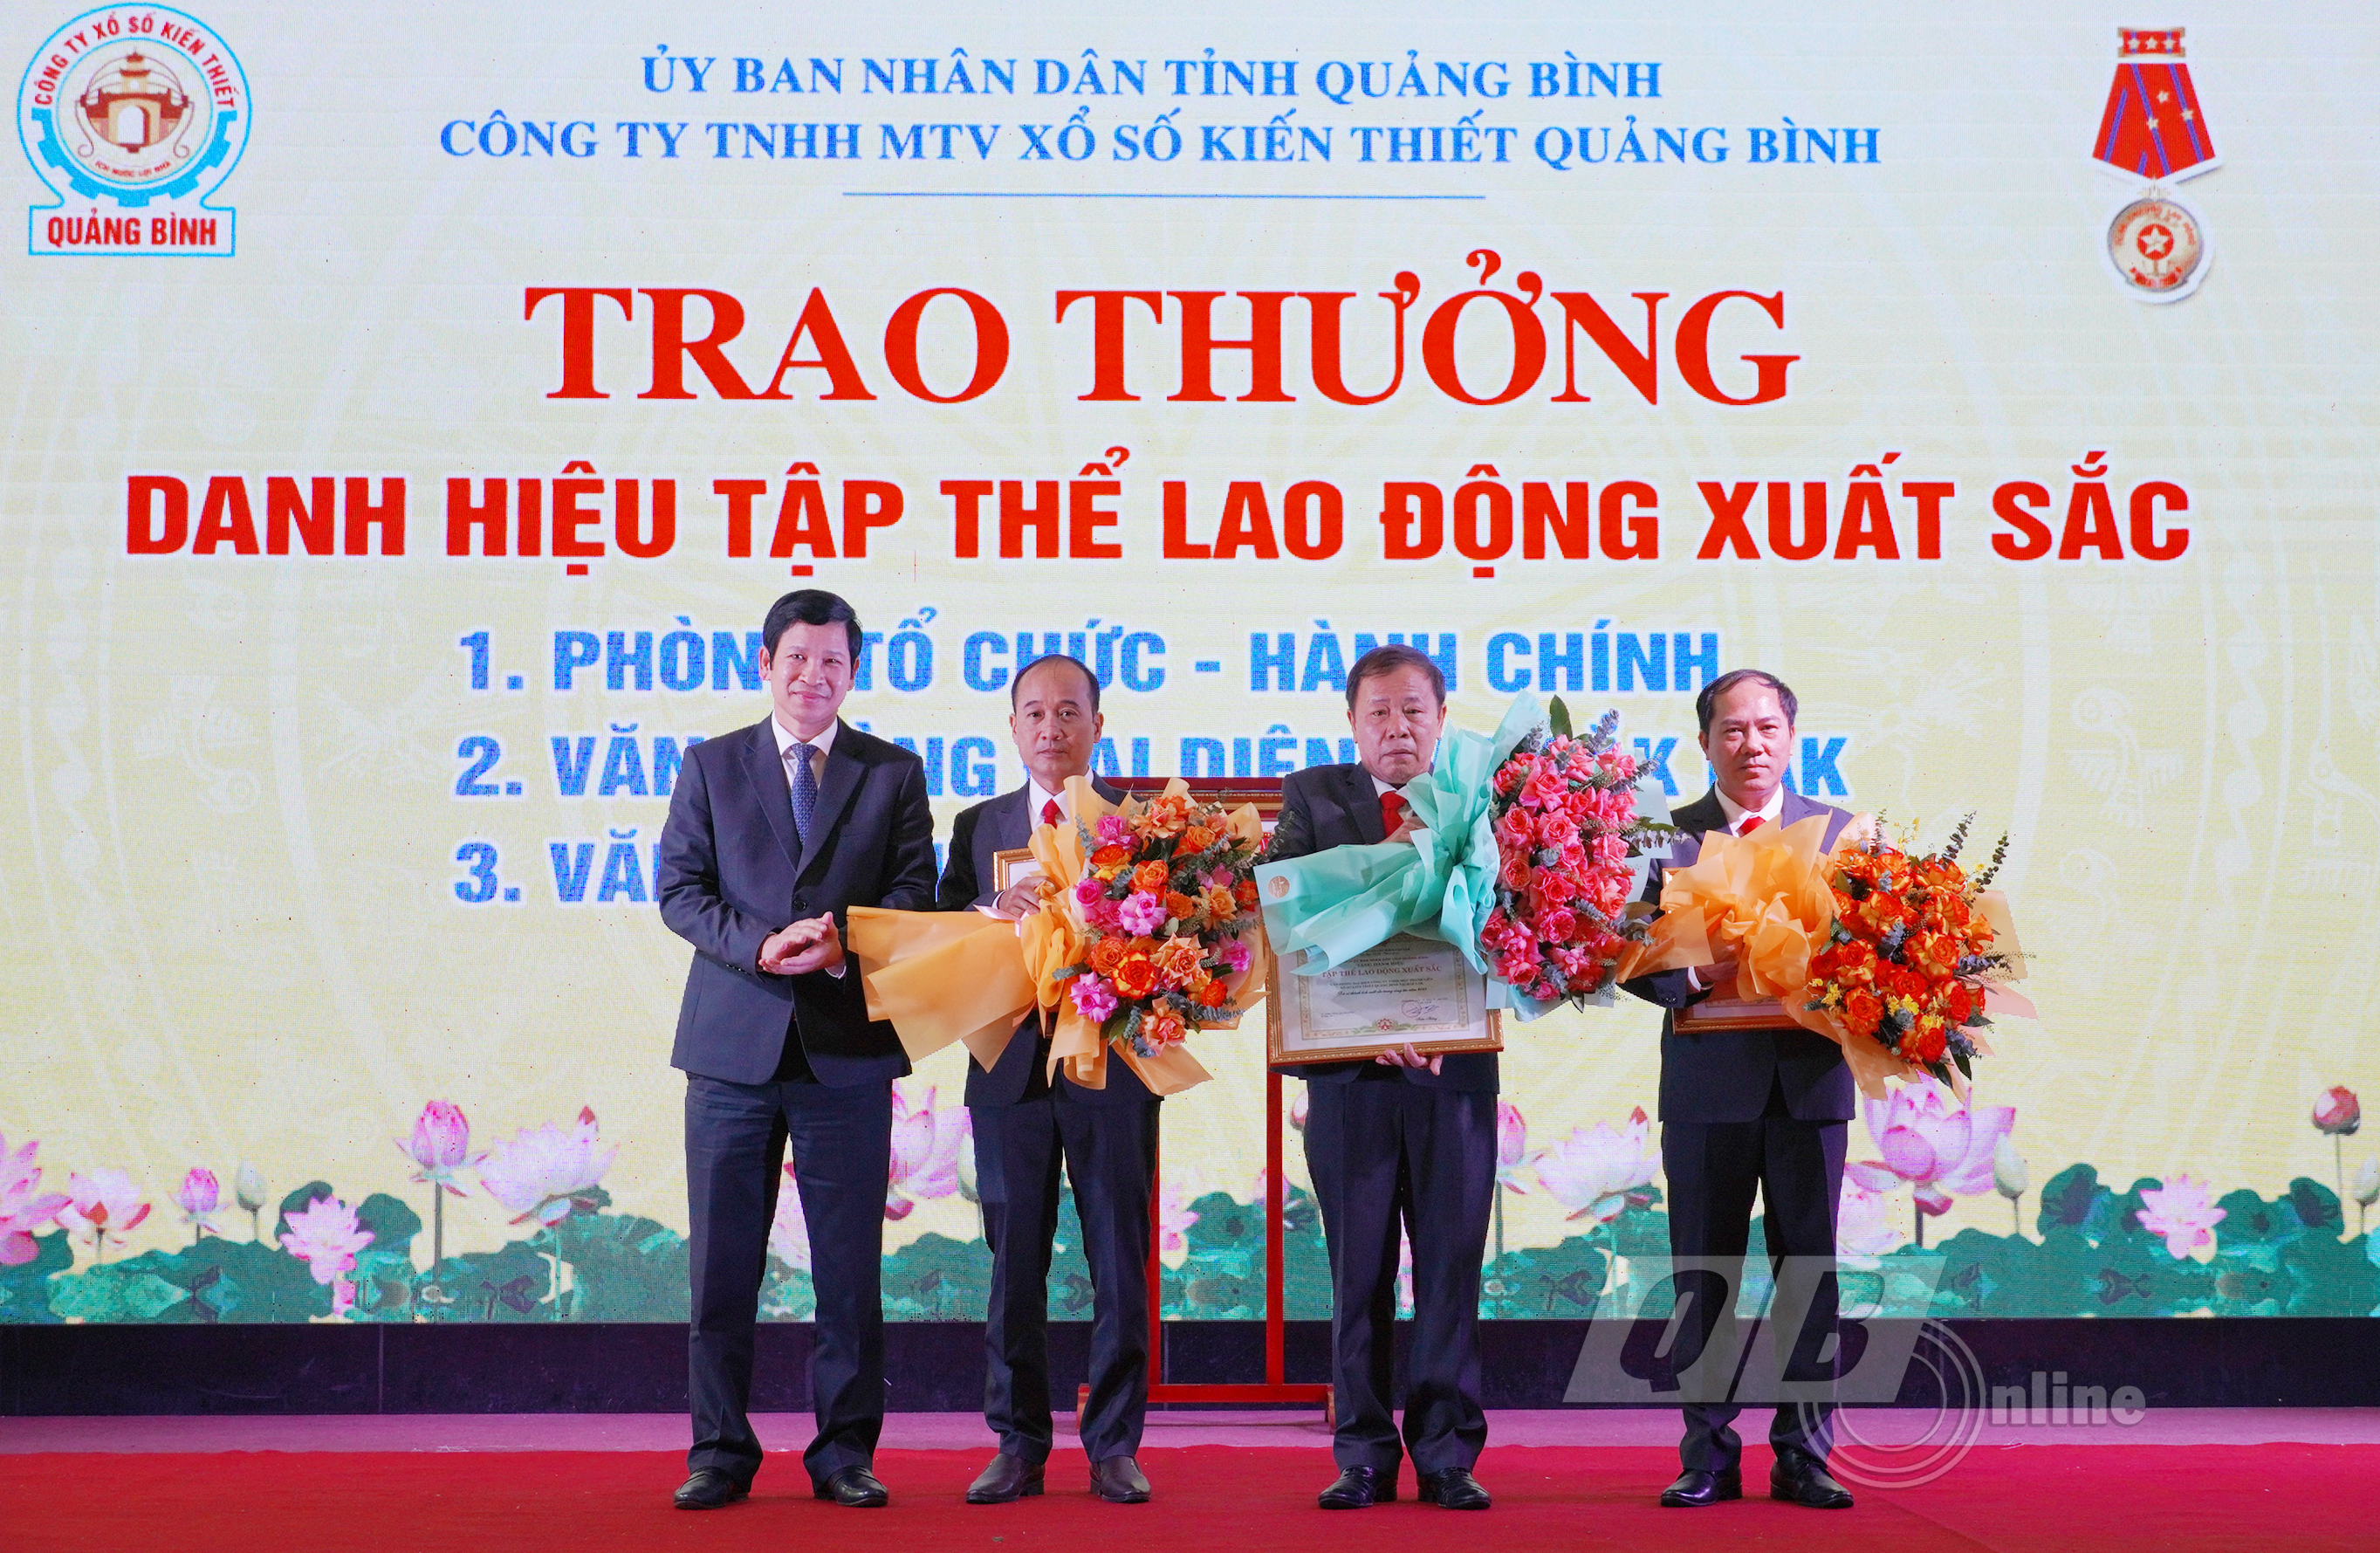 Đồng chí Phó Chủ tịch UBND tỉnh Hồ An Phong trao tặng danh hiệu Tập thể lao động xuất sắc của Chủ tịch UBND tỉnh cho các đơn vị thuộc Công ty SXKT Quảng Bình.